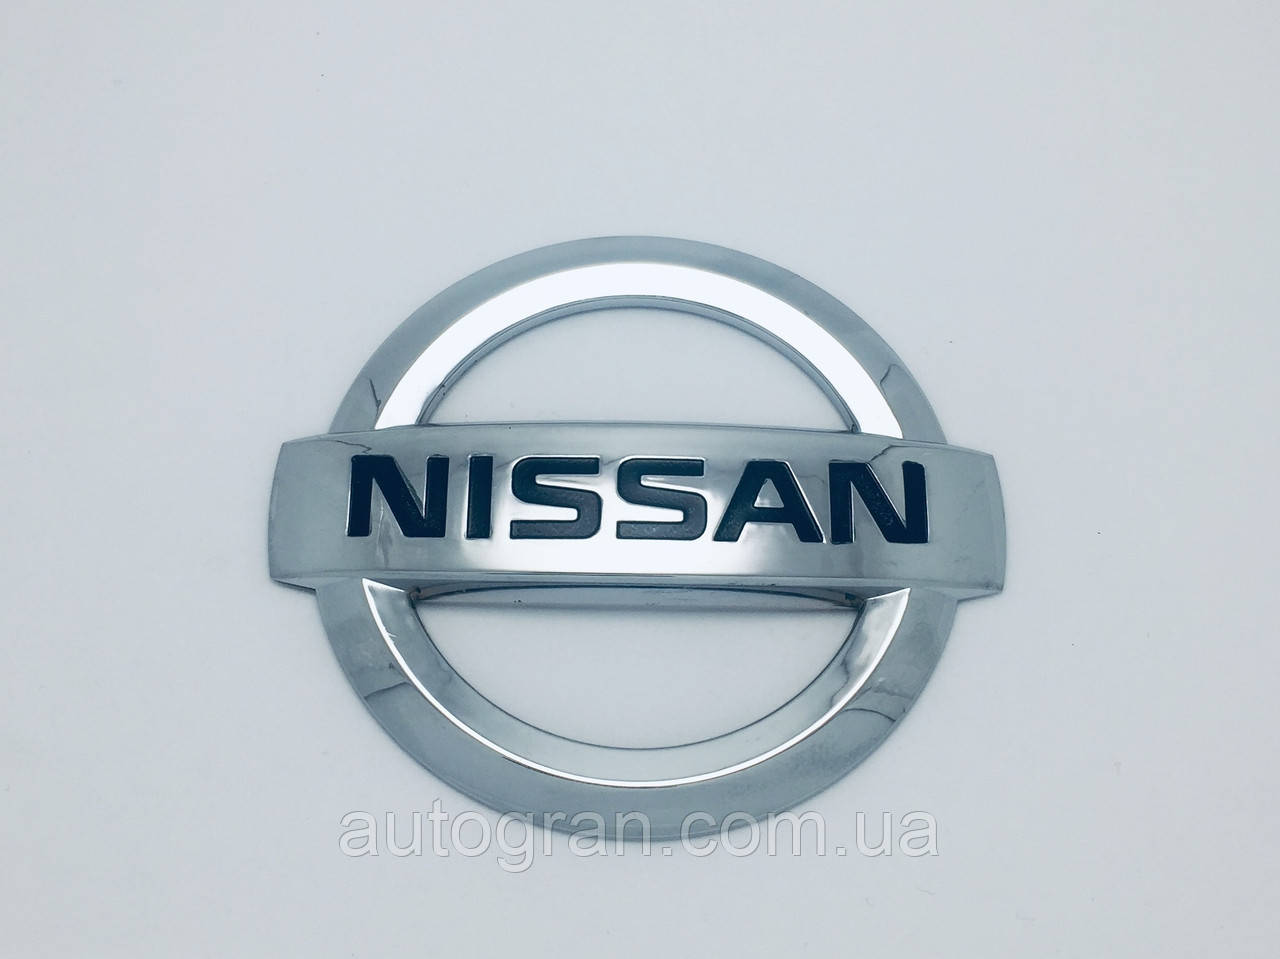 Емблема решітки радіатора і кришки багажника Nissan 11.8см*10см